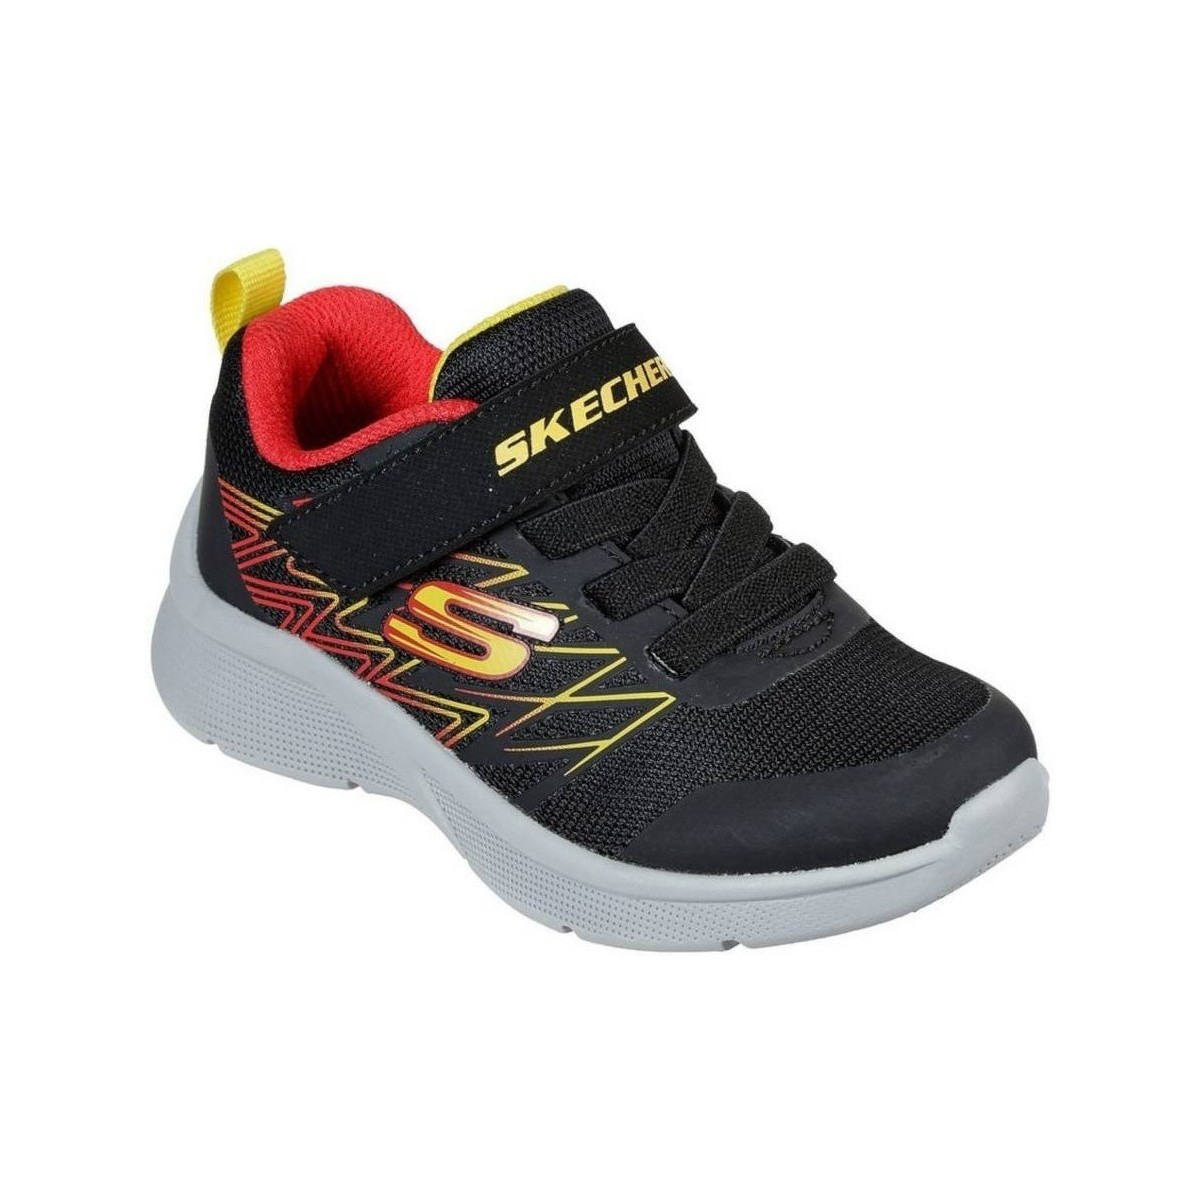 Schuhe Kinder Sneaker Low Skechers Microspec Texlor Schwarz, Gelb